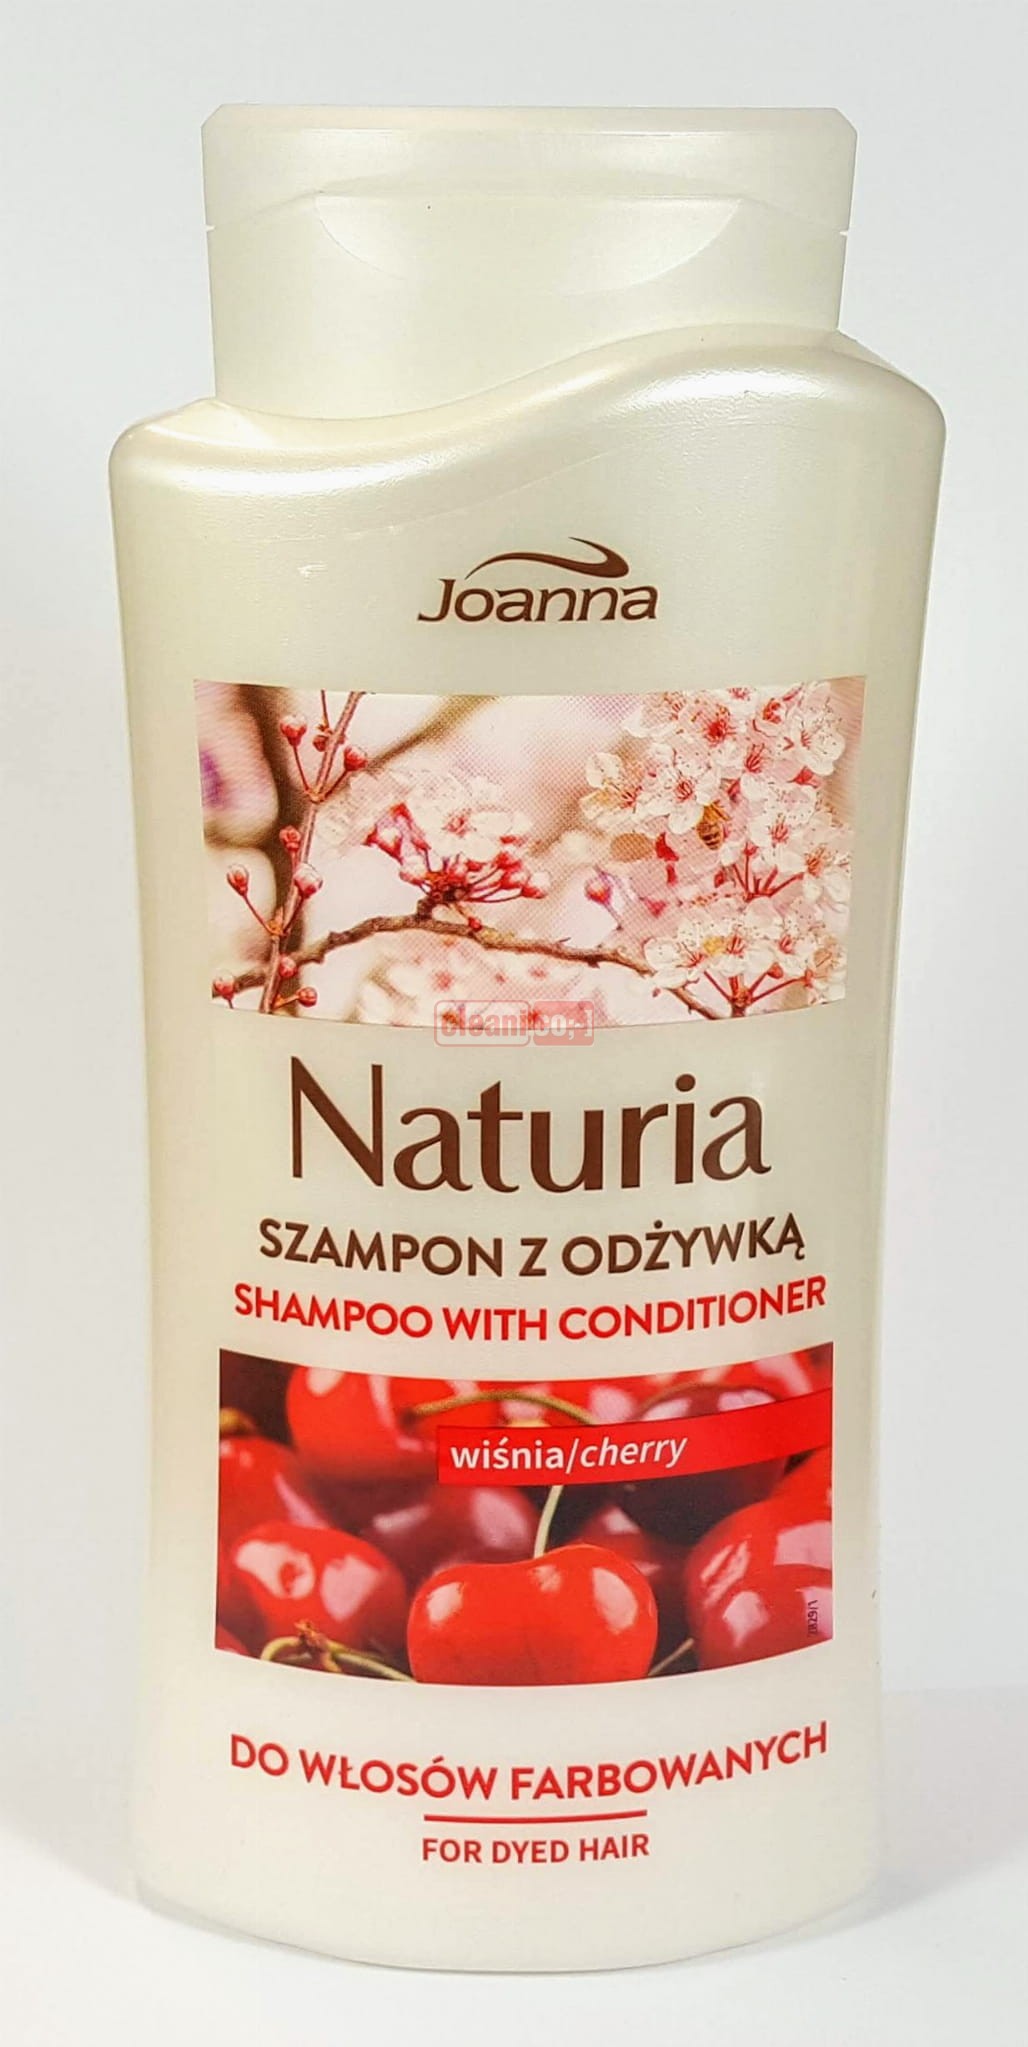 joanna szampon do wlosow farbowanych z odzywka